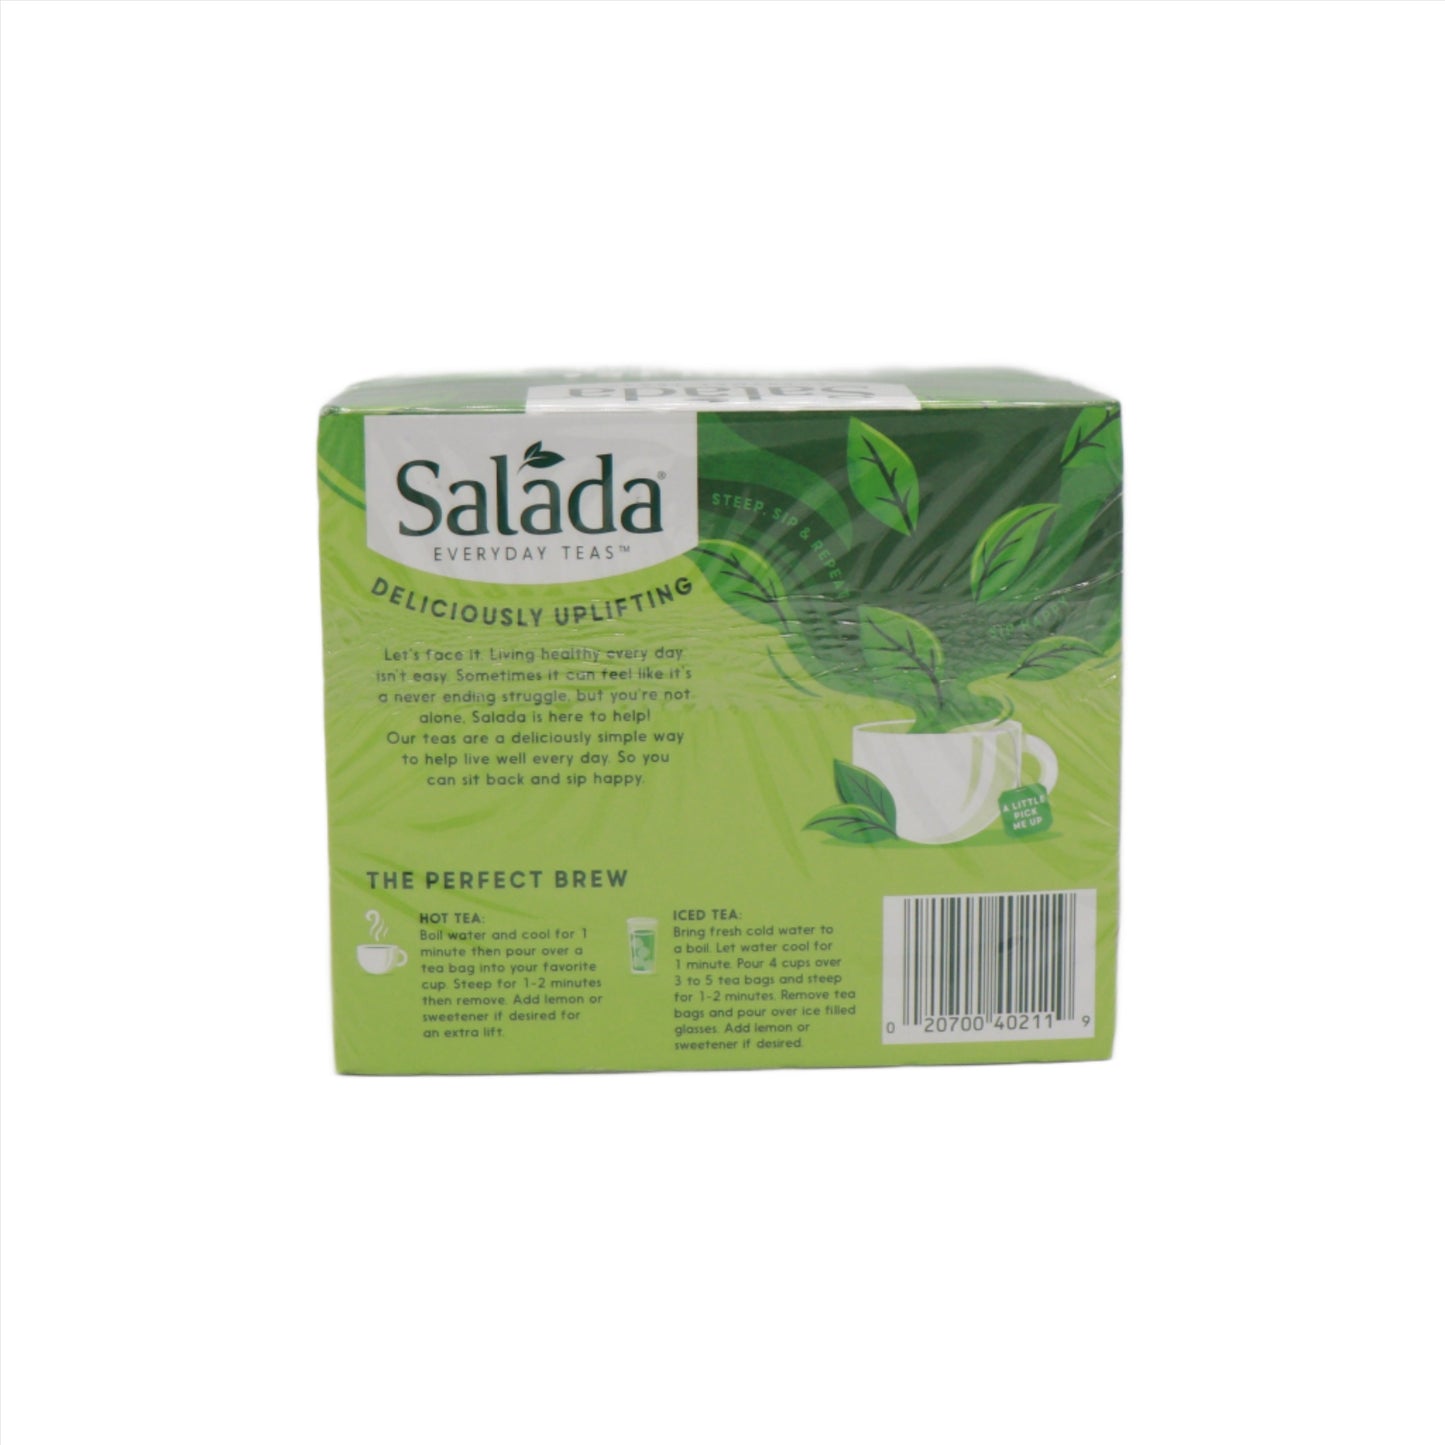 Salada Green Tea Classic Tea 40 Count